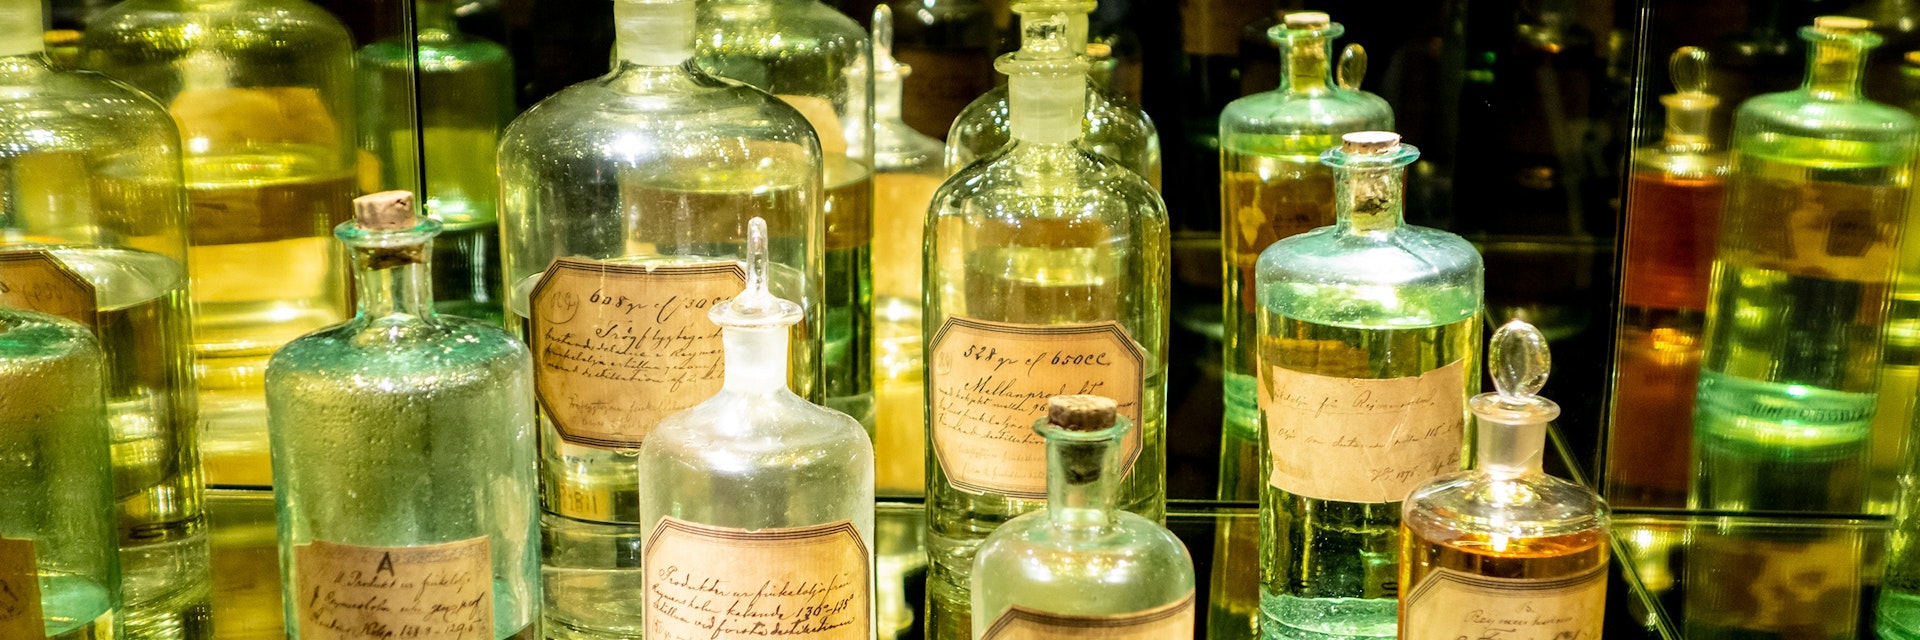 Antique spirit bottles at Spritmuseum in Stockholm, Sweden.